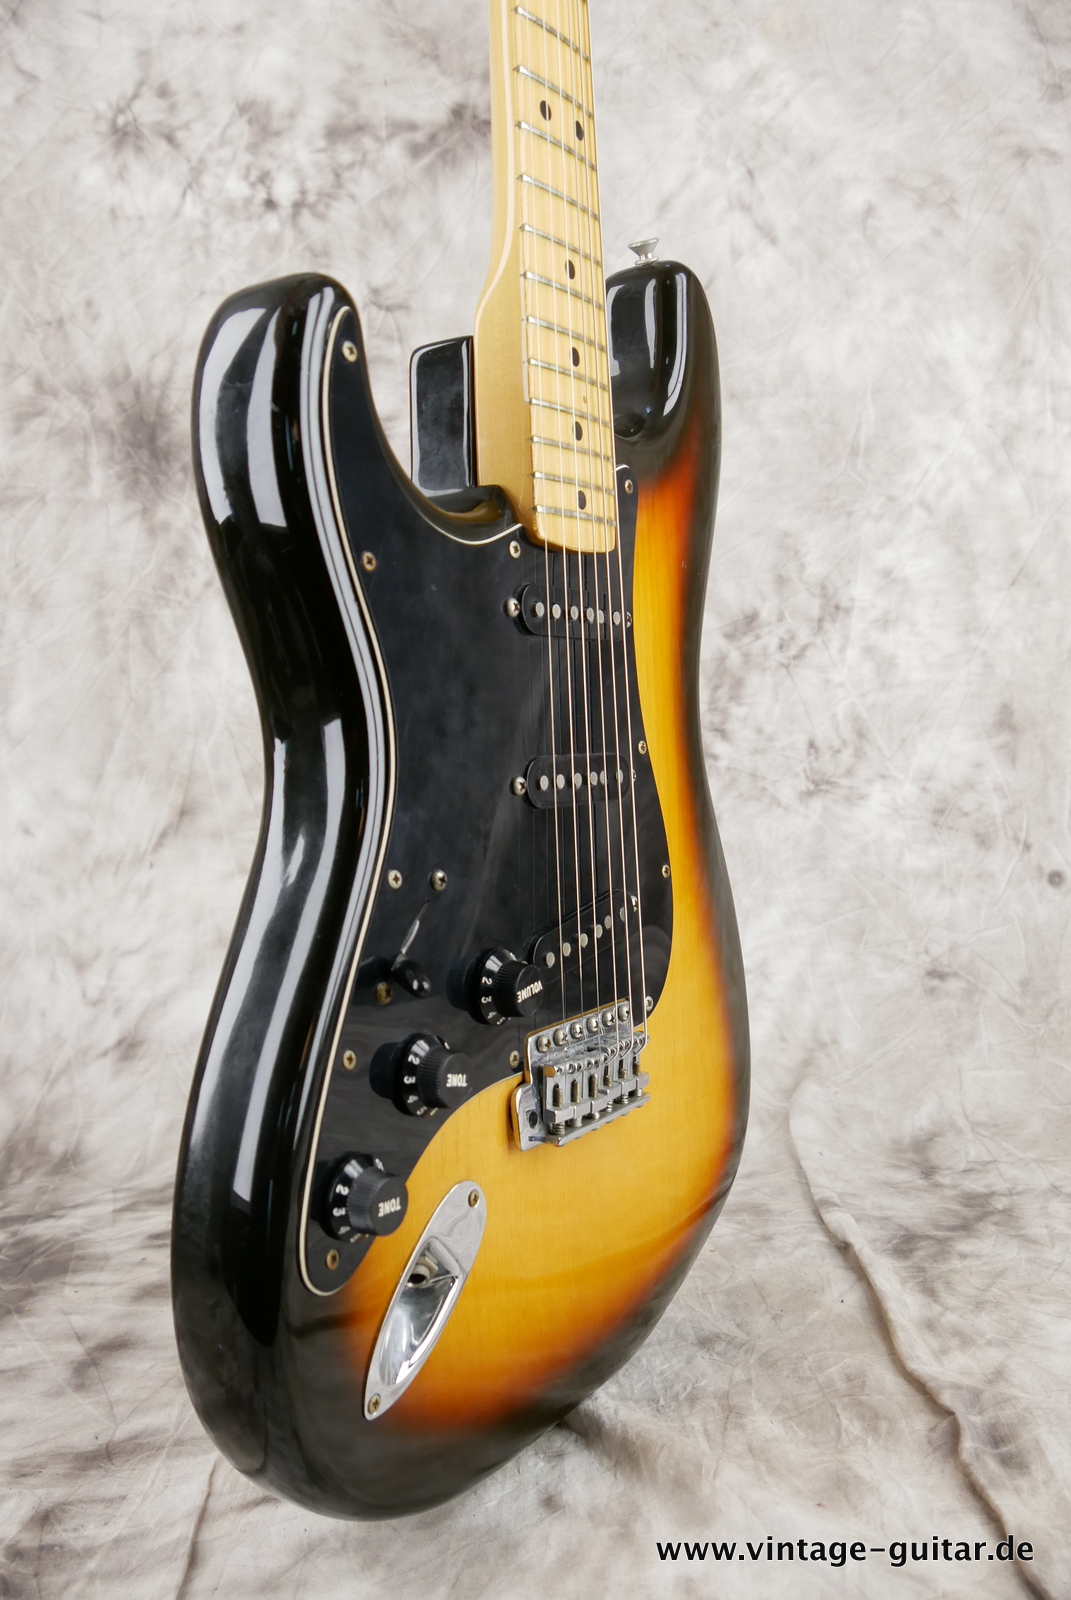 Fender_Left_Hand_Stratocaster_1980_sunburst_usa_maple_neck-009.JPG